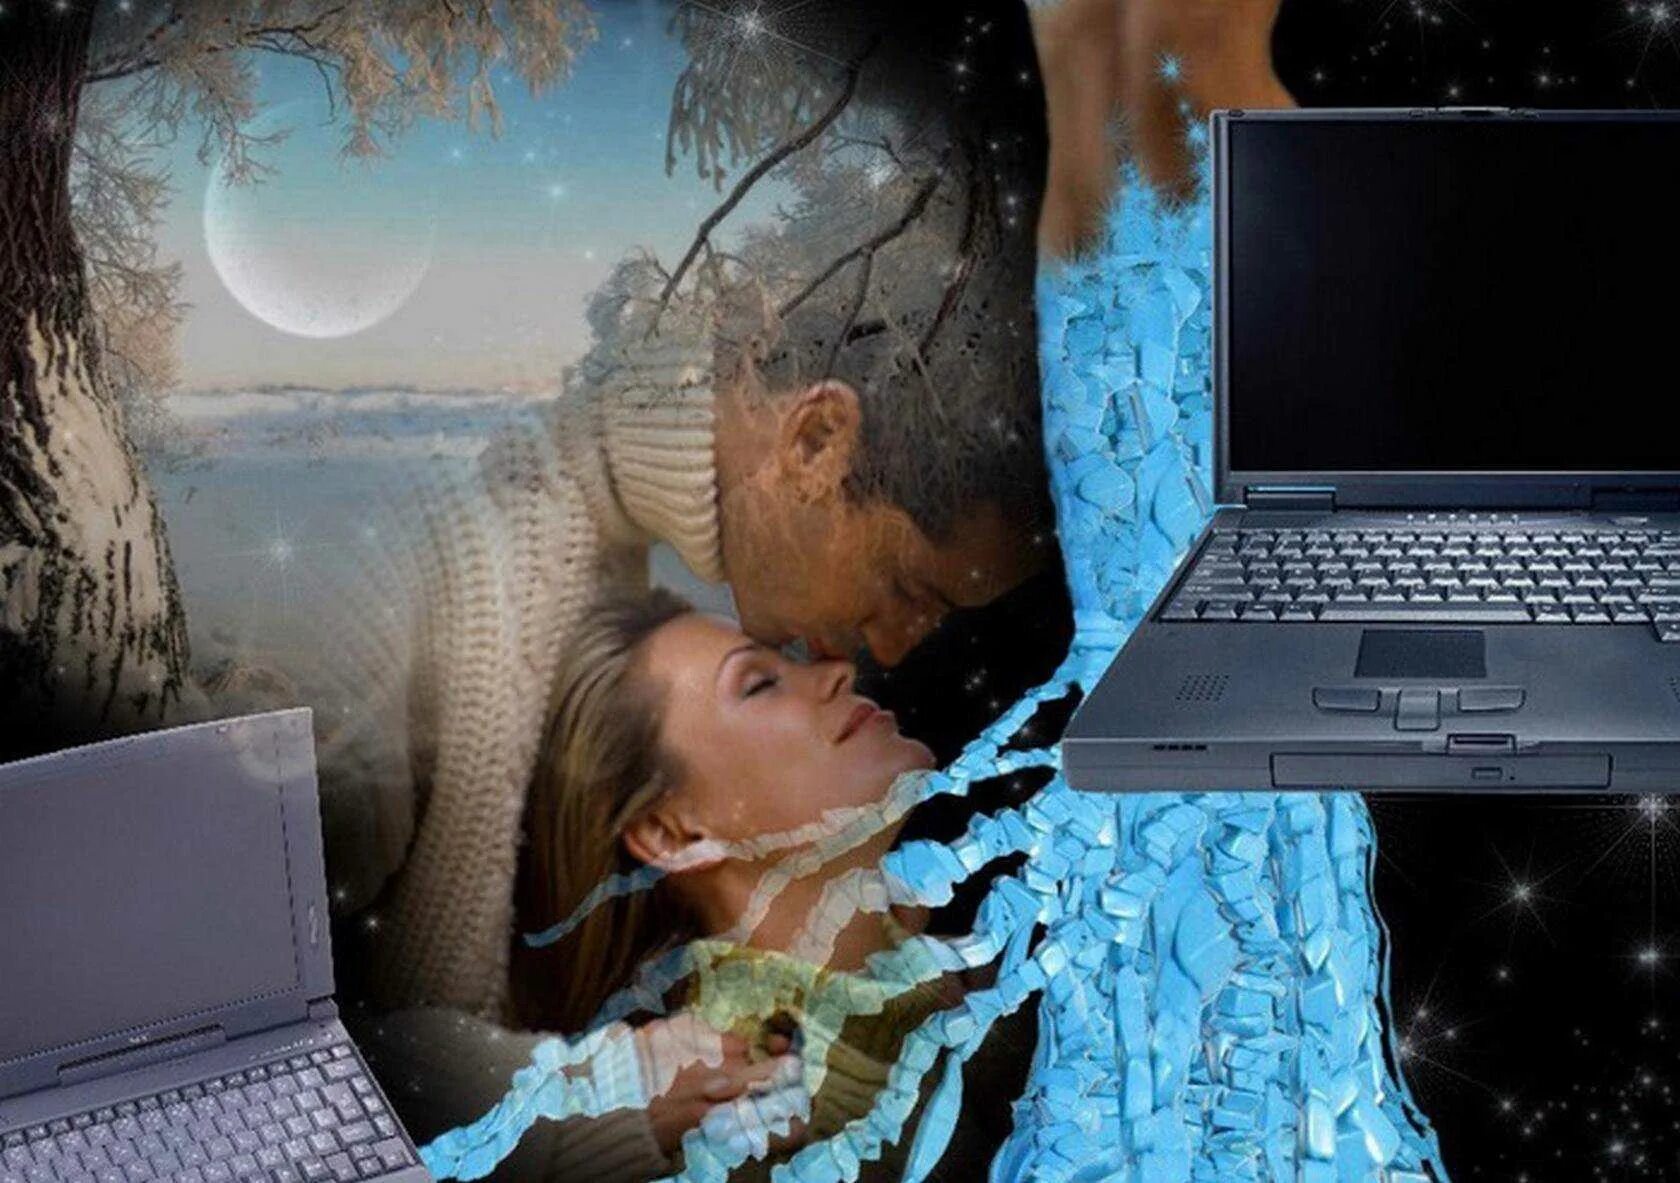 Картинка в инете. Интернет любовь. Виртуальная любовь. Виртуальная любовь в интернете. Виртуальная любовь картинки.